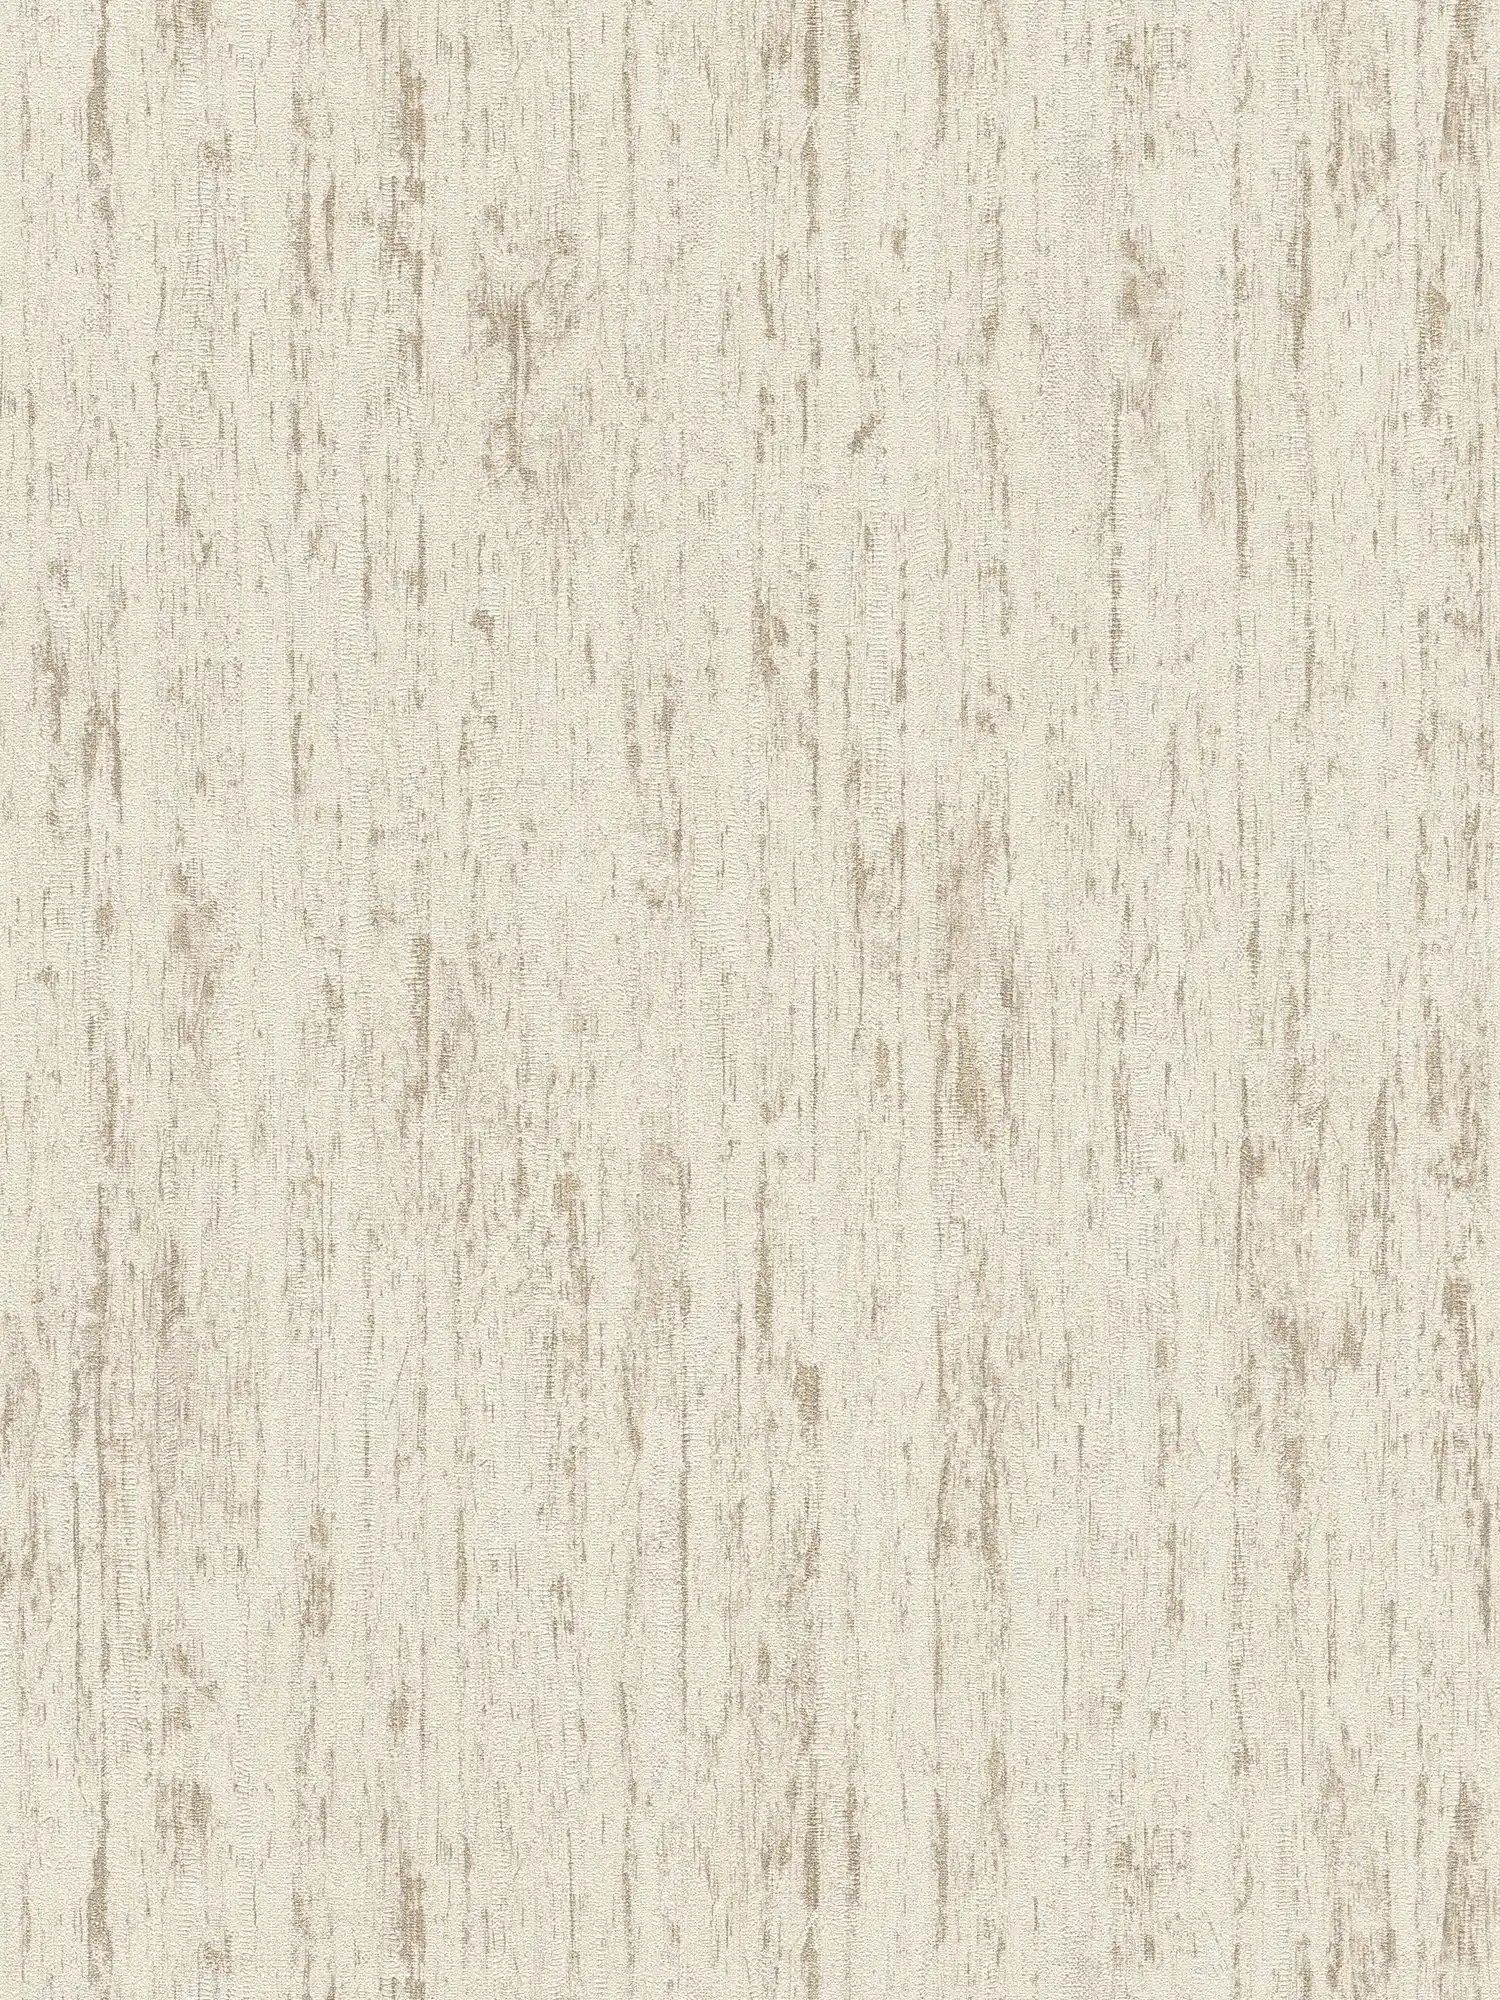 Tapete mit wellenförmiger Linienbemusterung – Weiß, Beige, Gold
